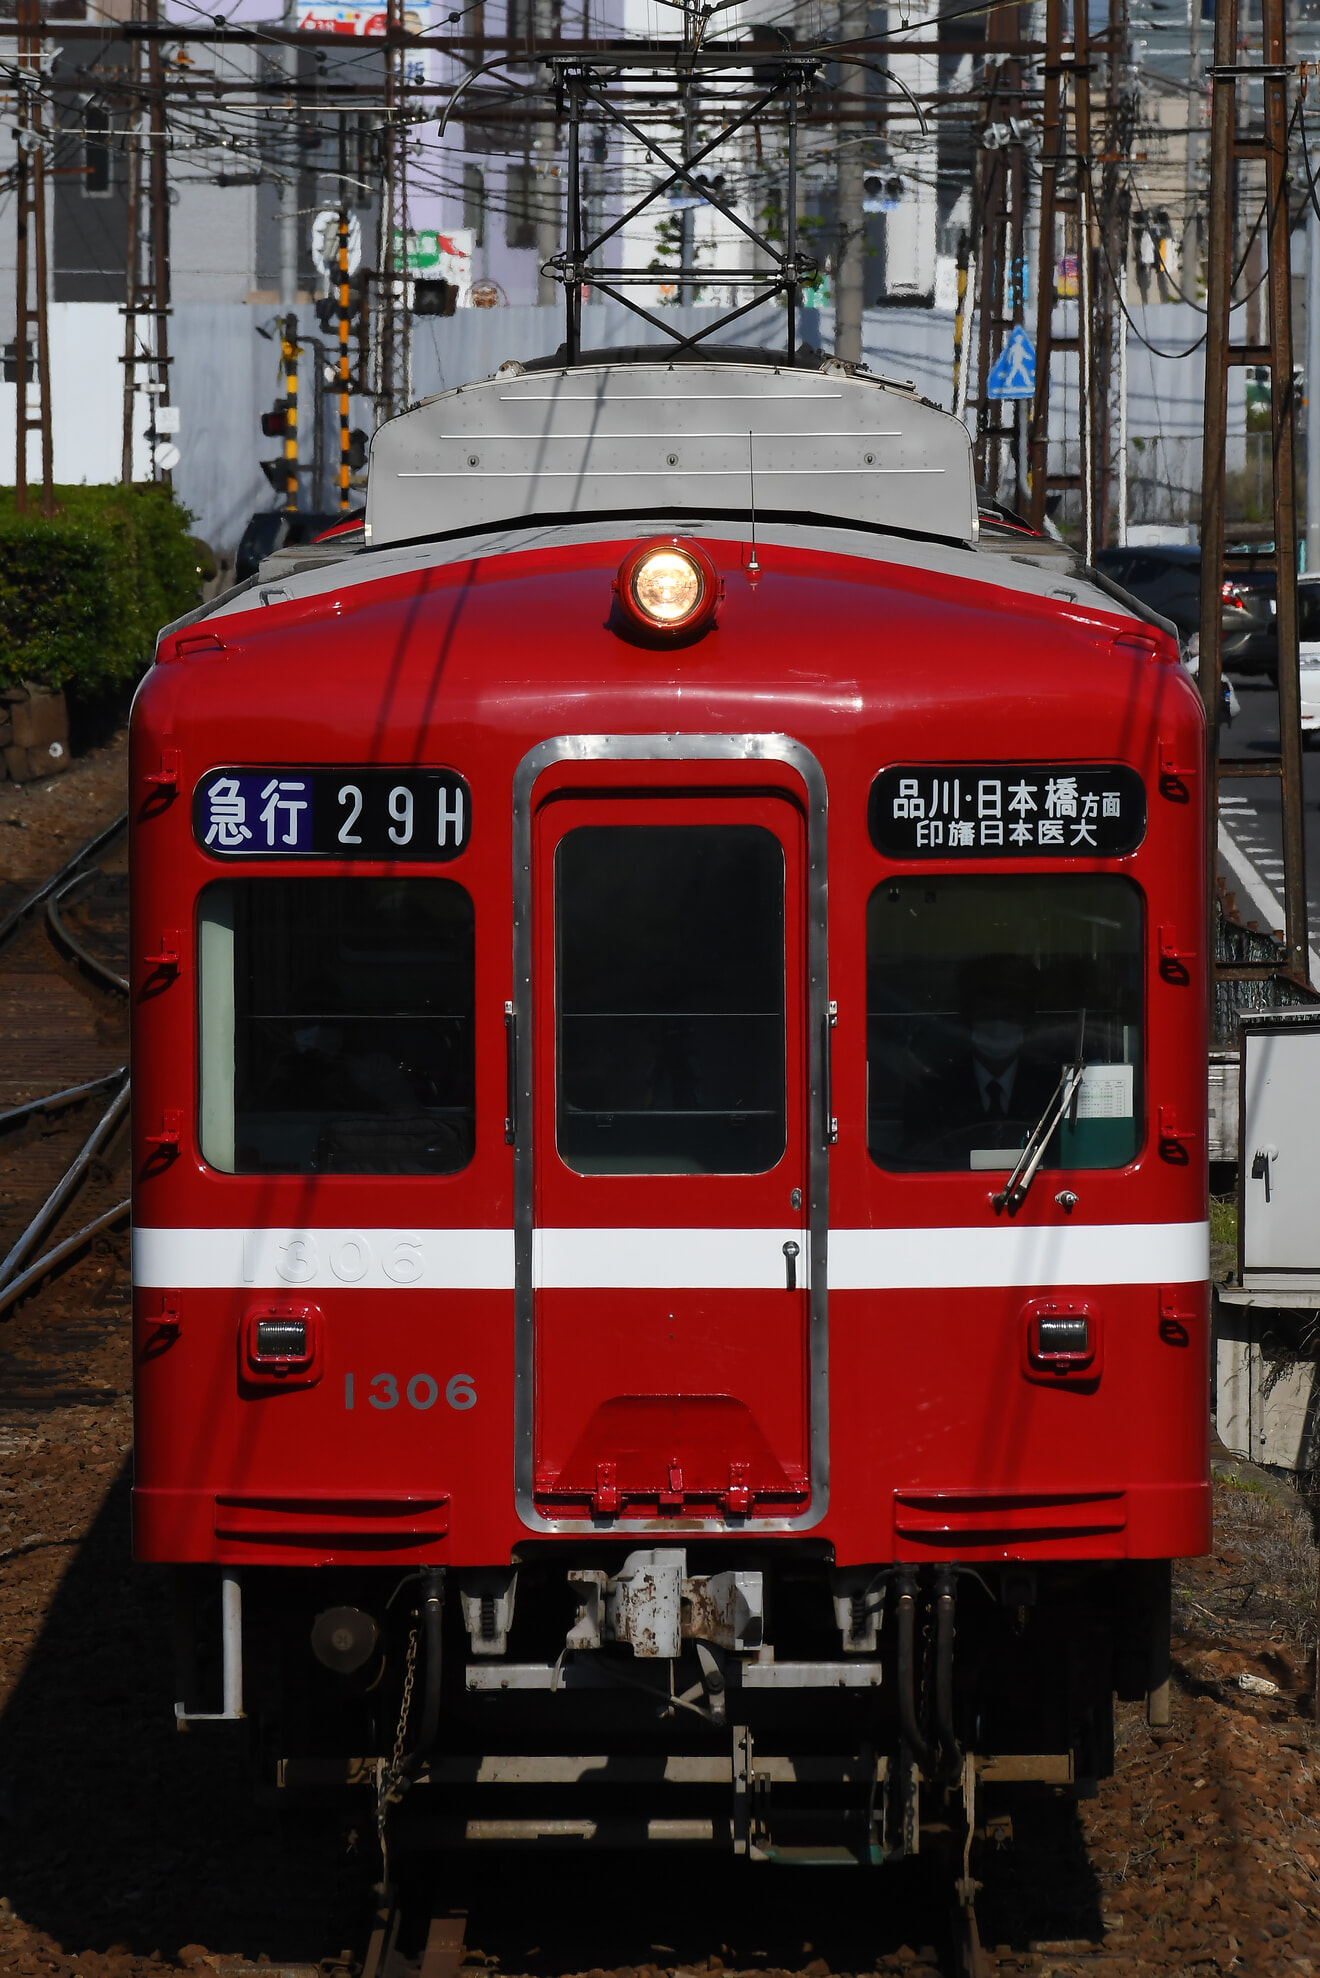 【ことでん】1300形1305編成「追憶の赤い電車」貸切列車の拡大写真